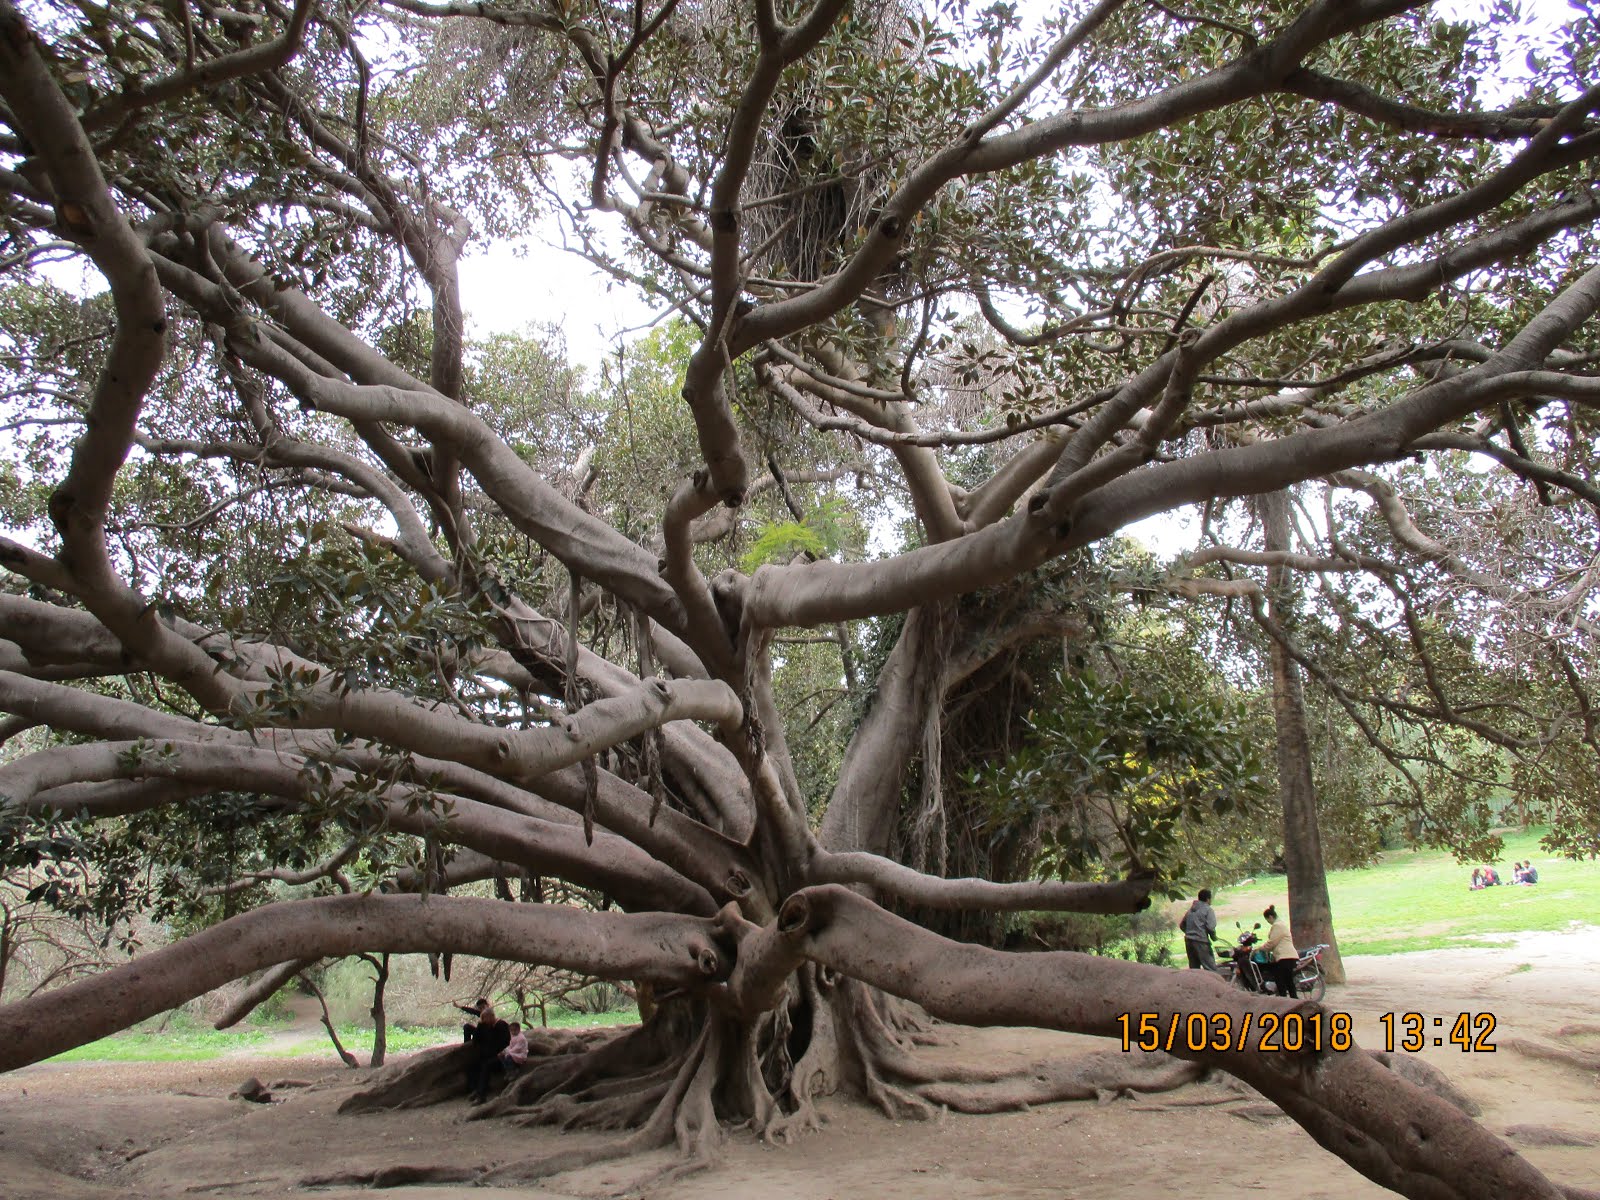 شجرةٌ عظيمة، حديقة البلفدير، تونس.